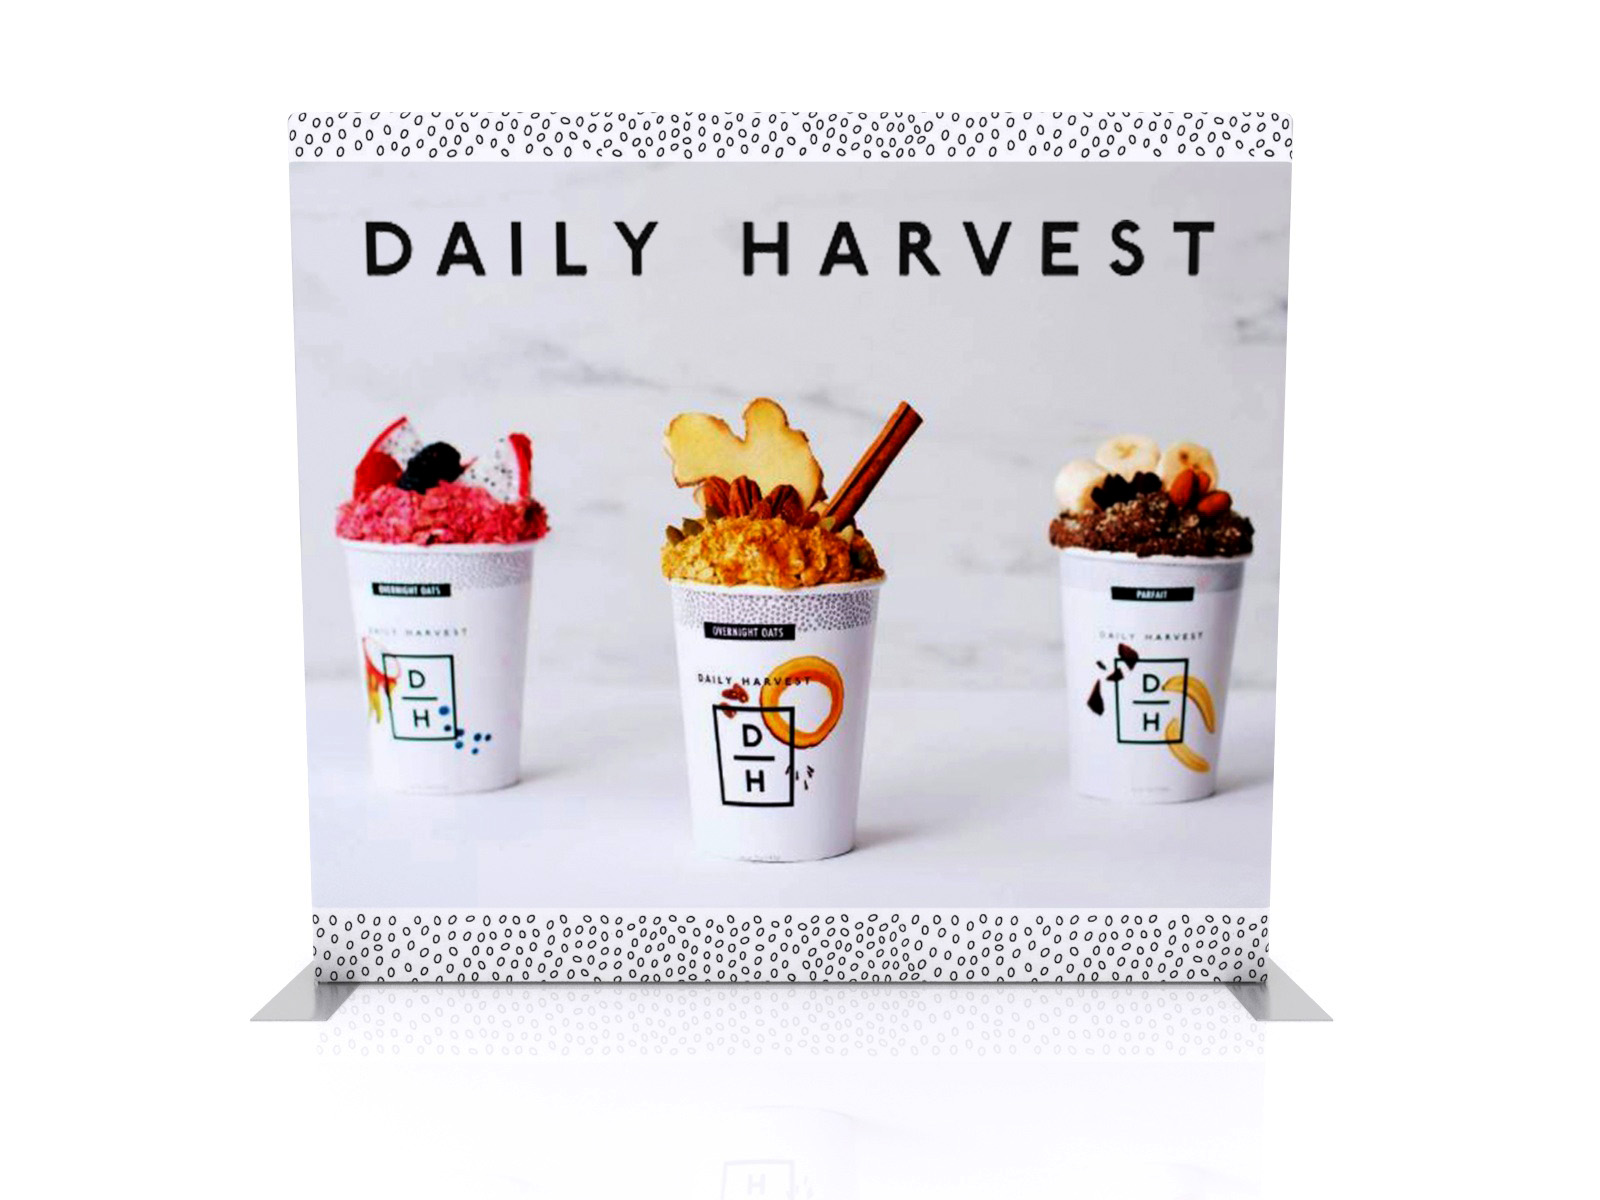 daily harvest exhibit design ideas